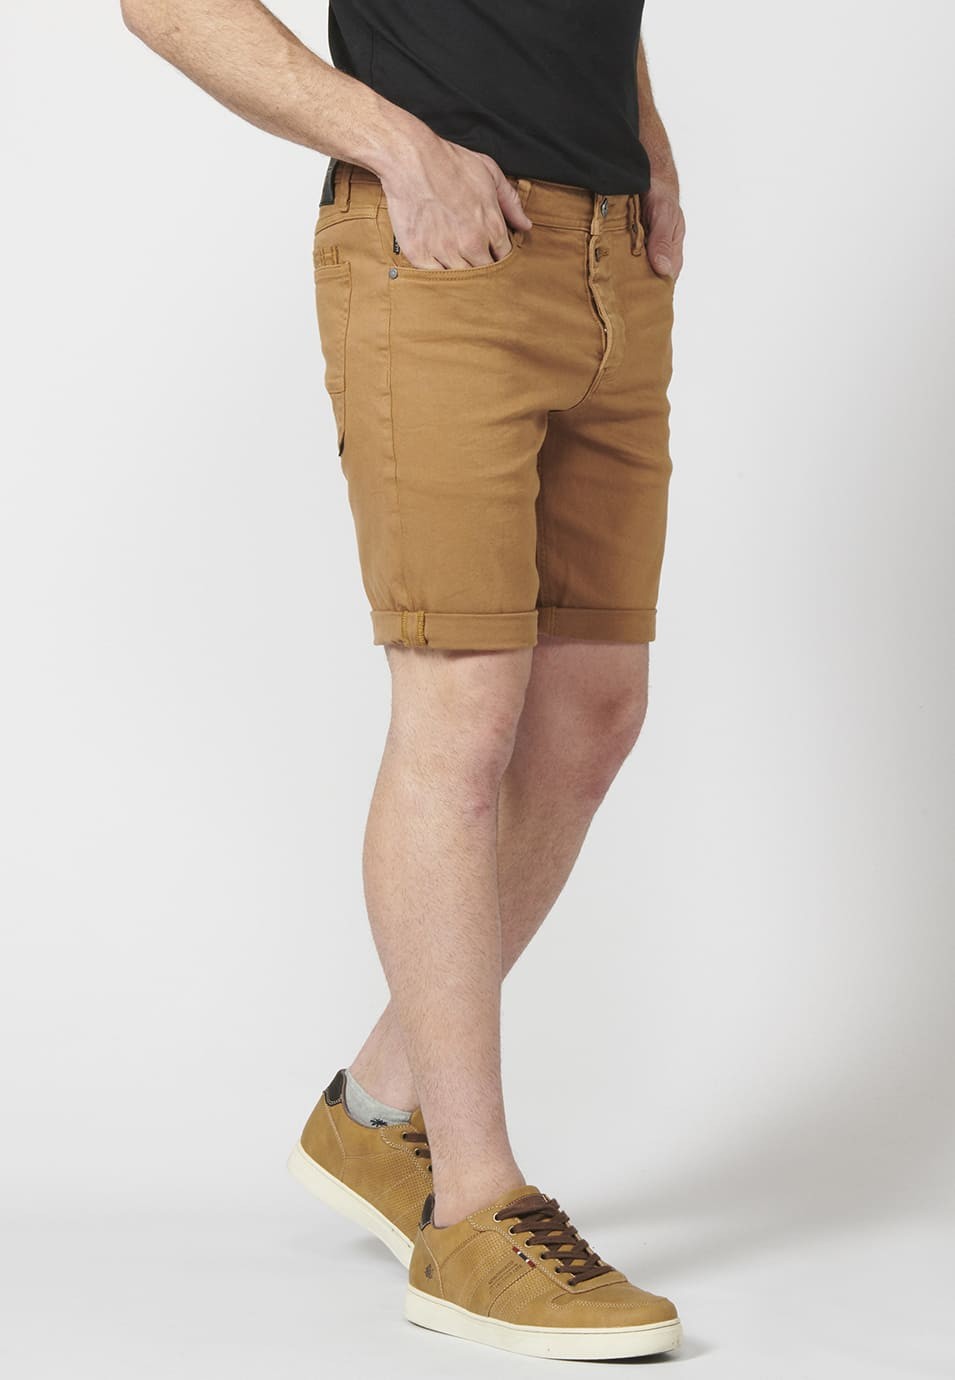 Pantalon corto color tapered fit con detalle de cadena extraíble para Hombre 6